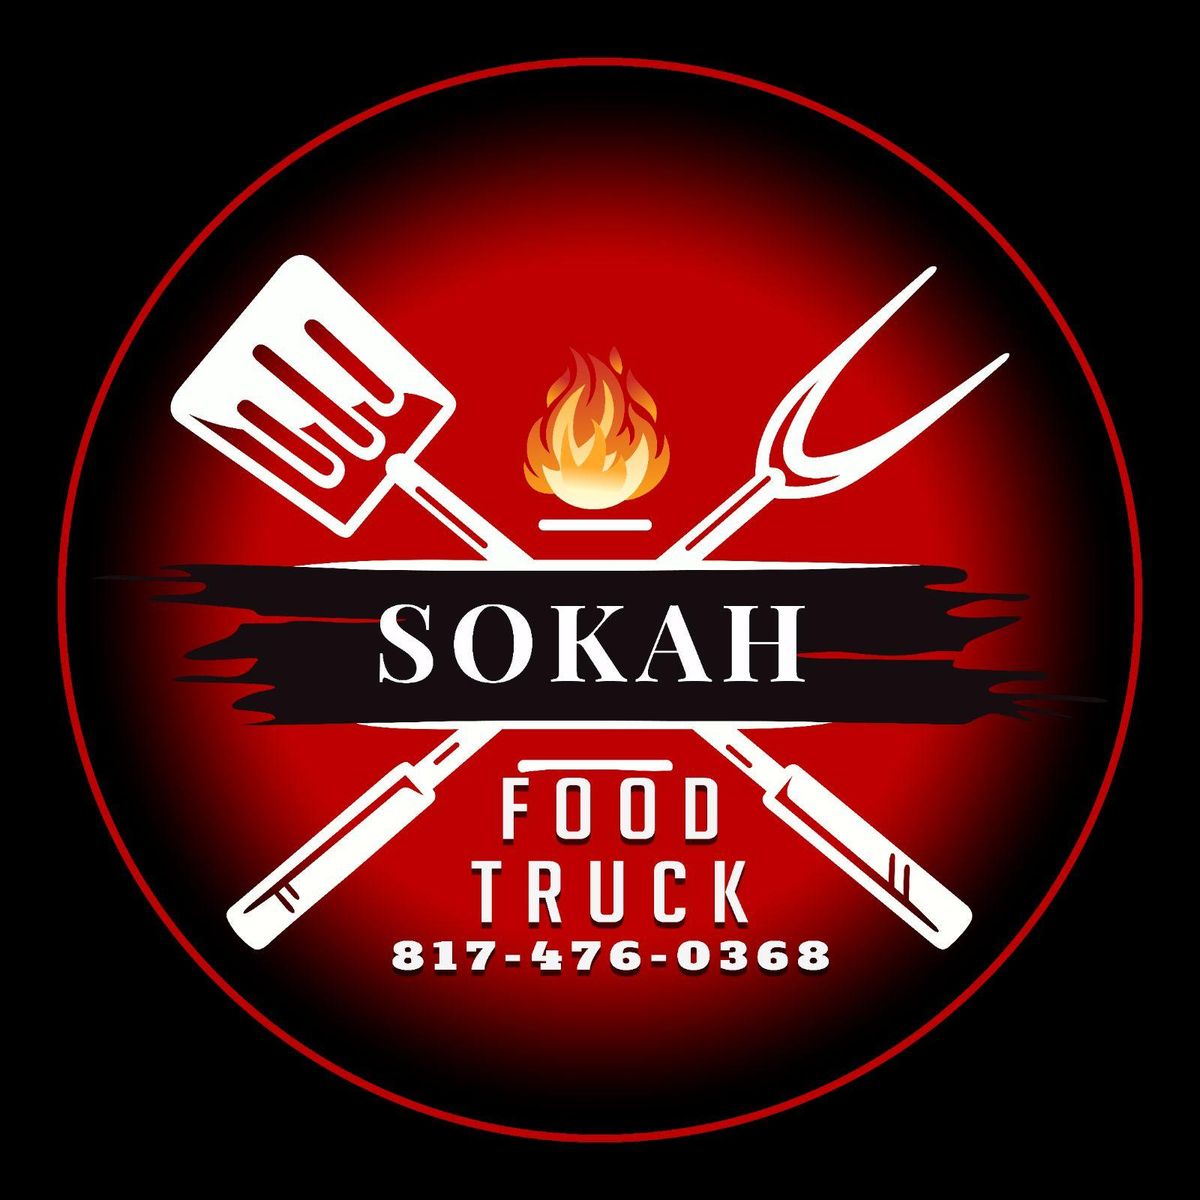 Sokah Food Truck